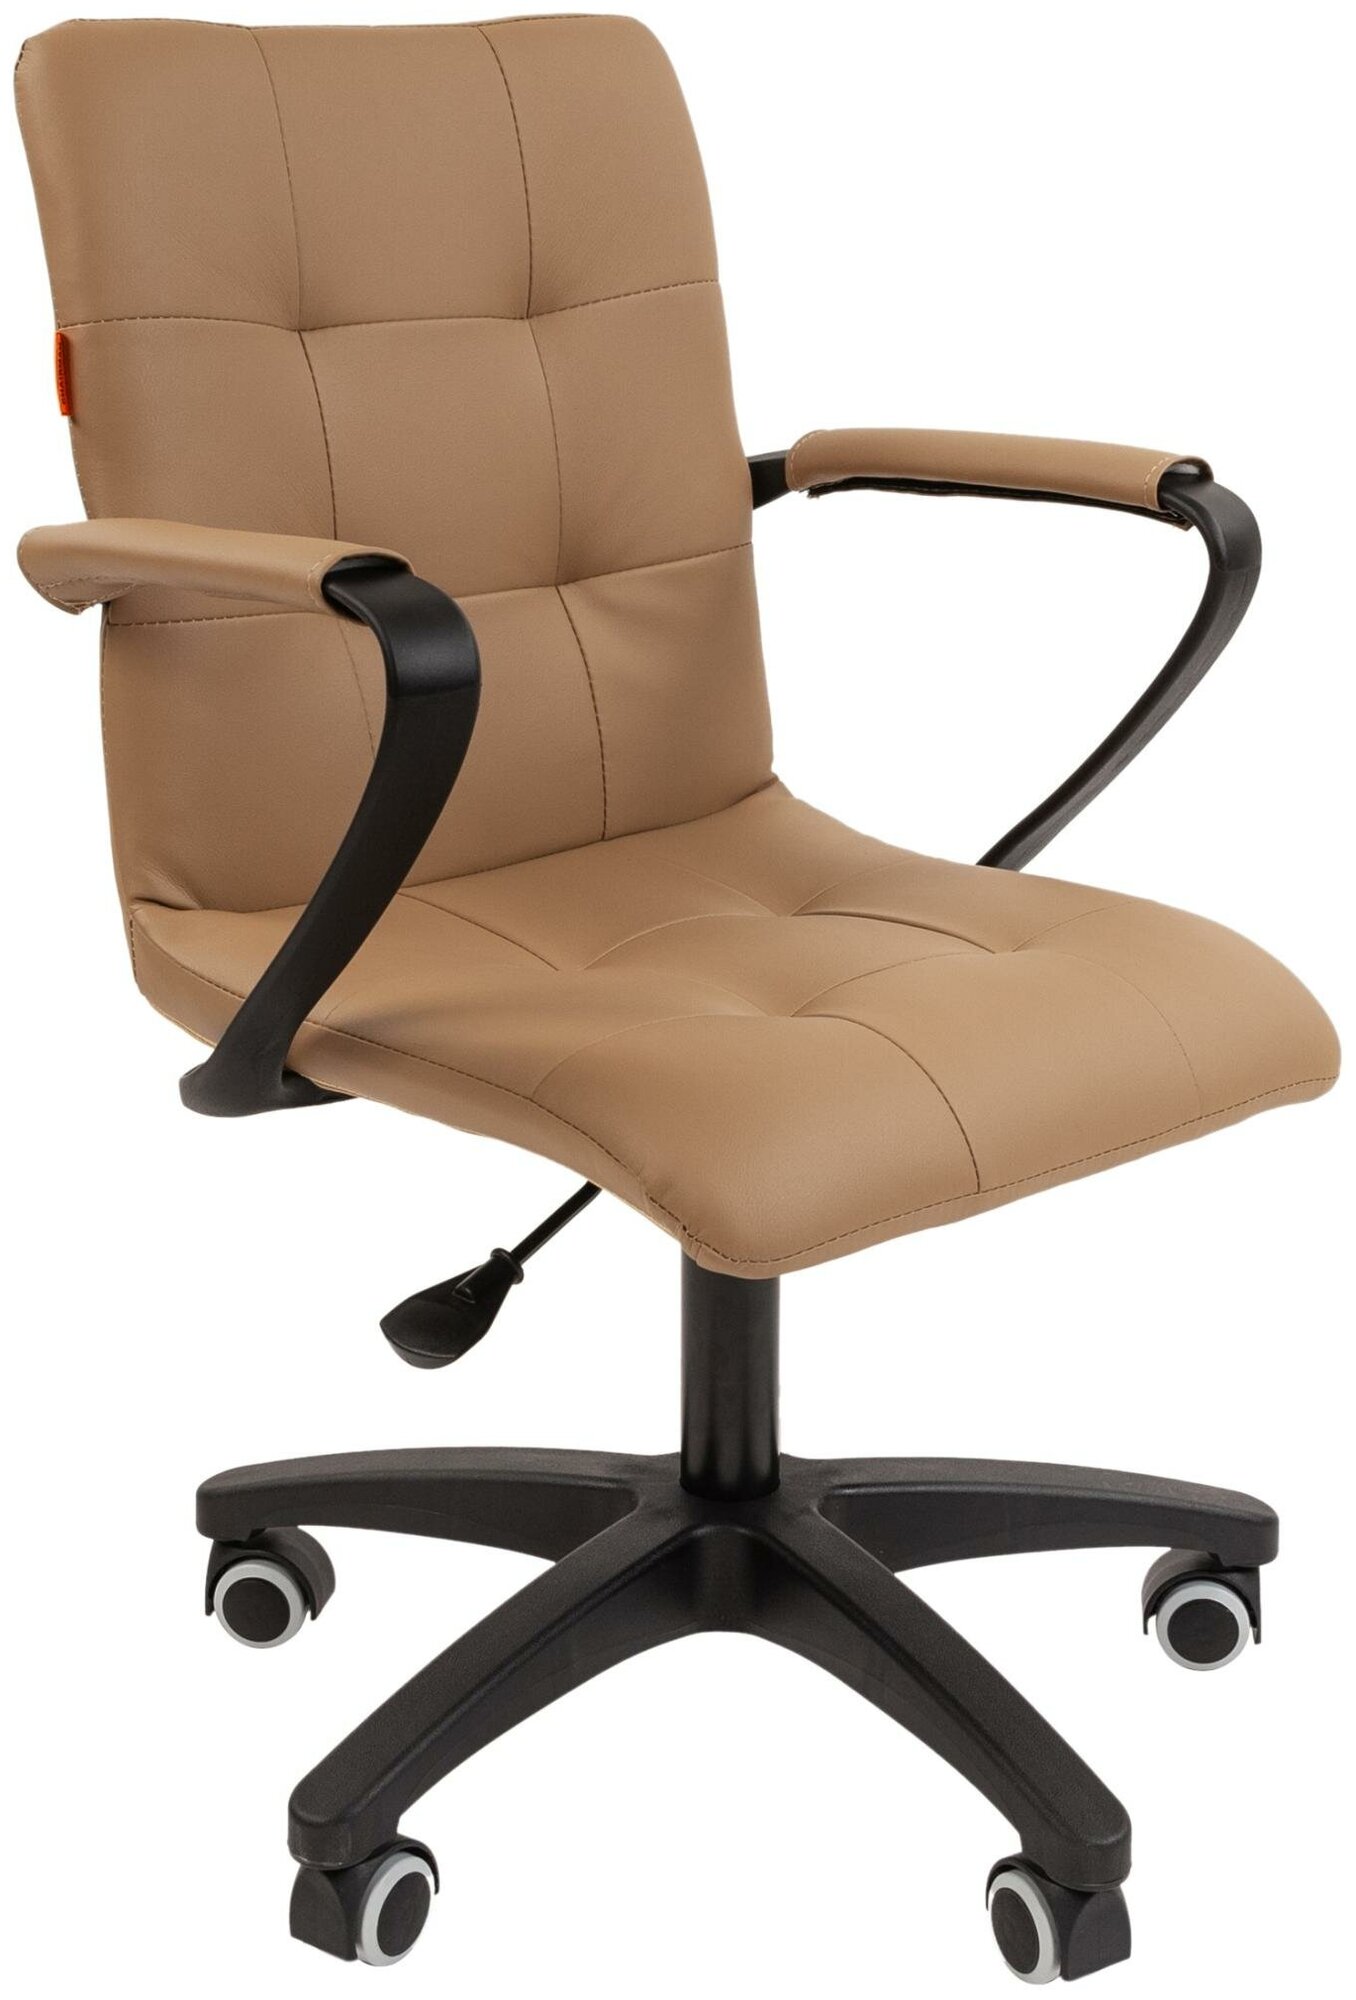 Компьютерное кресло Chairman 030 офисное (обивка: экокожа, крестовина полиуретан,с подлокотниками, Biege)